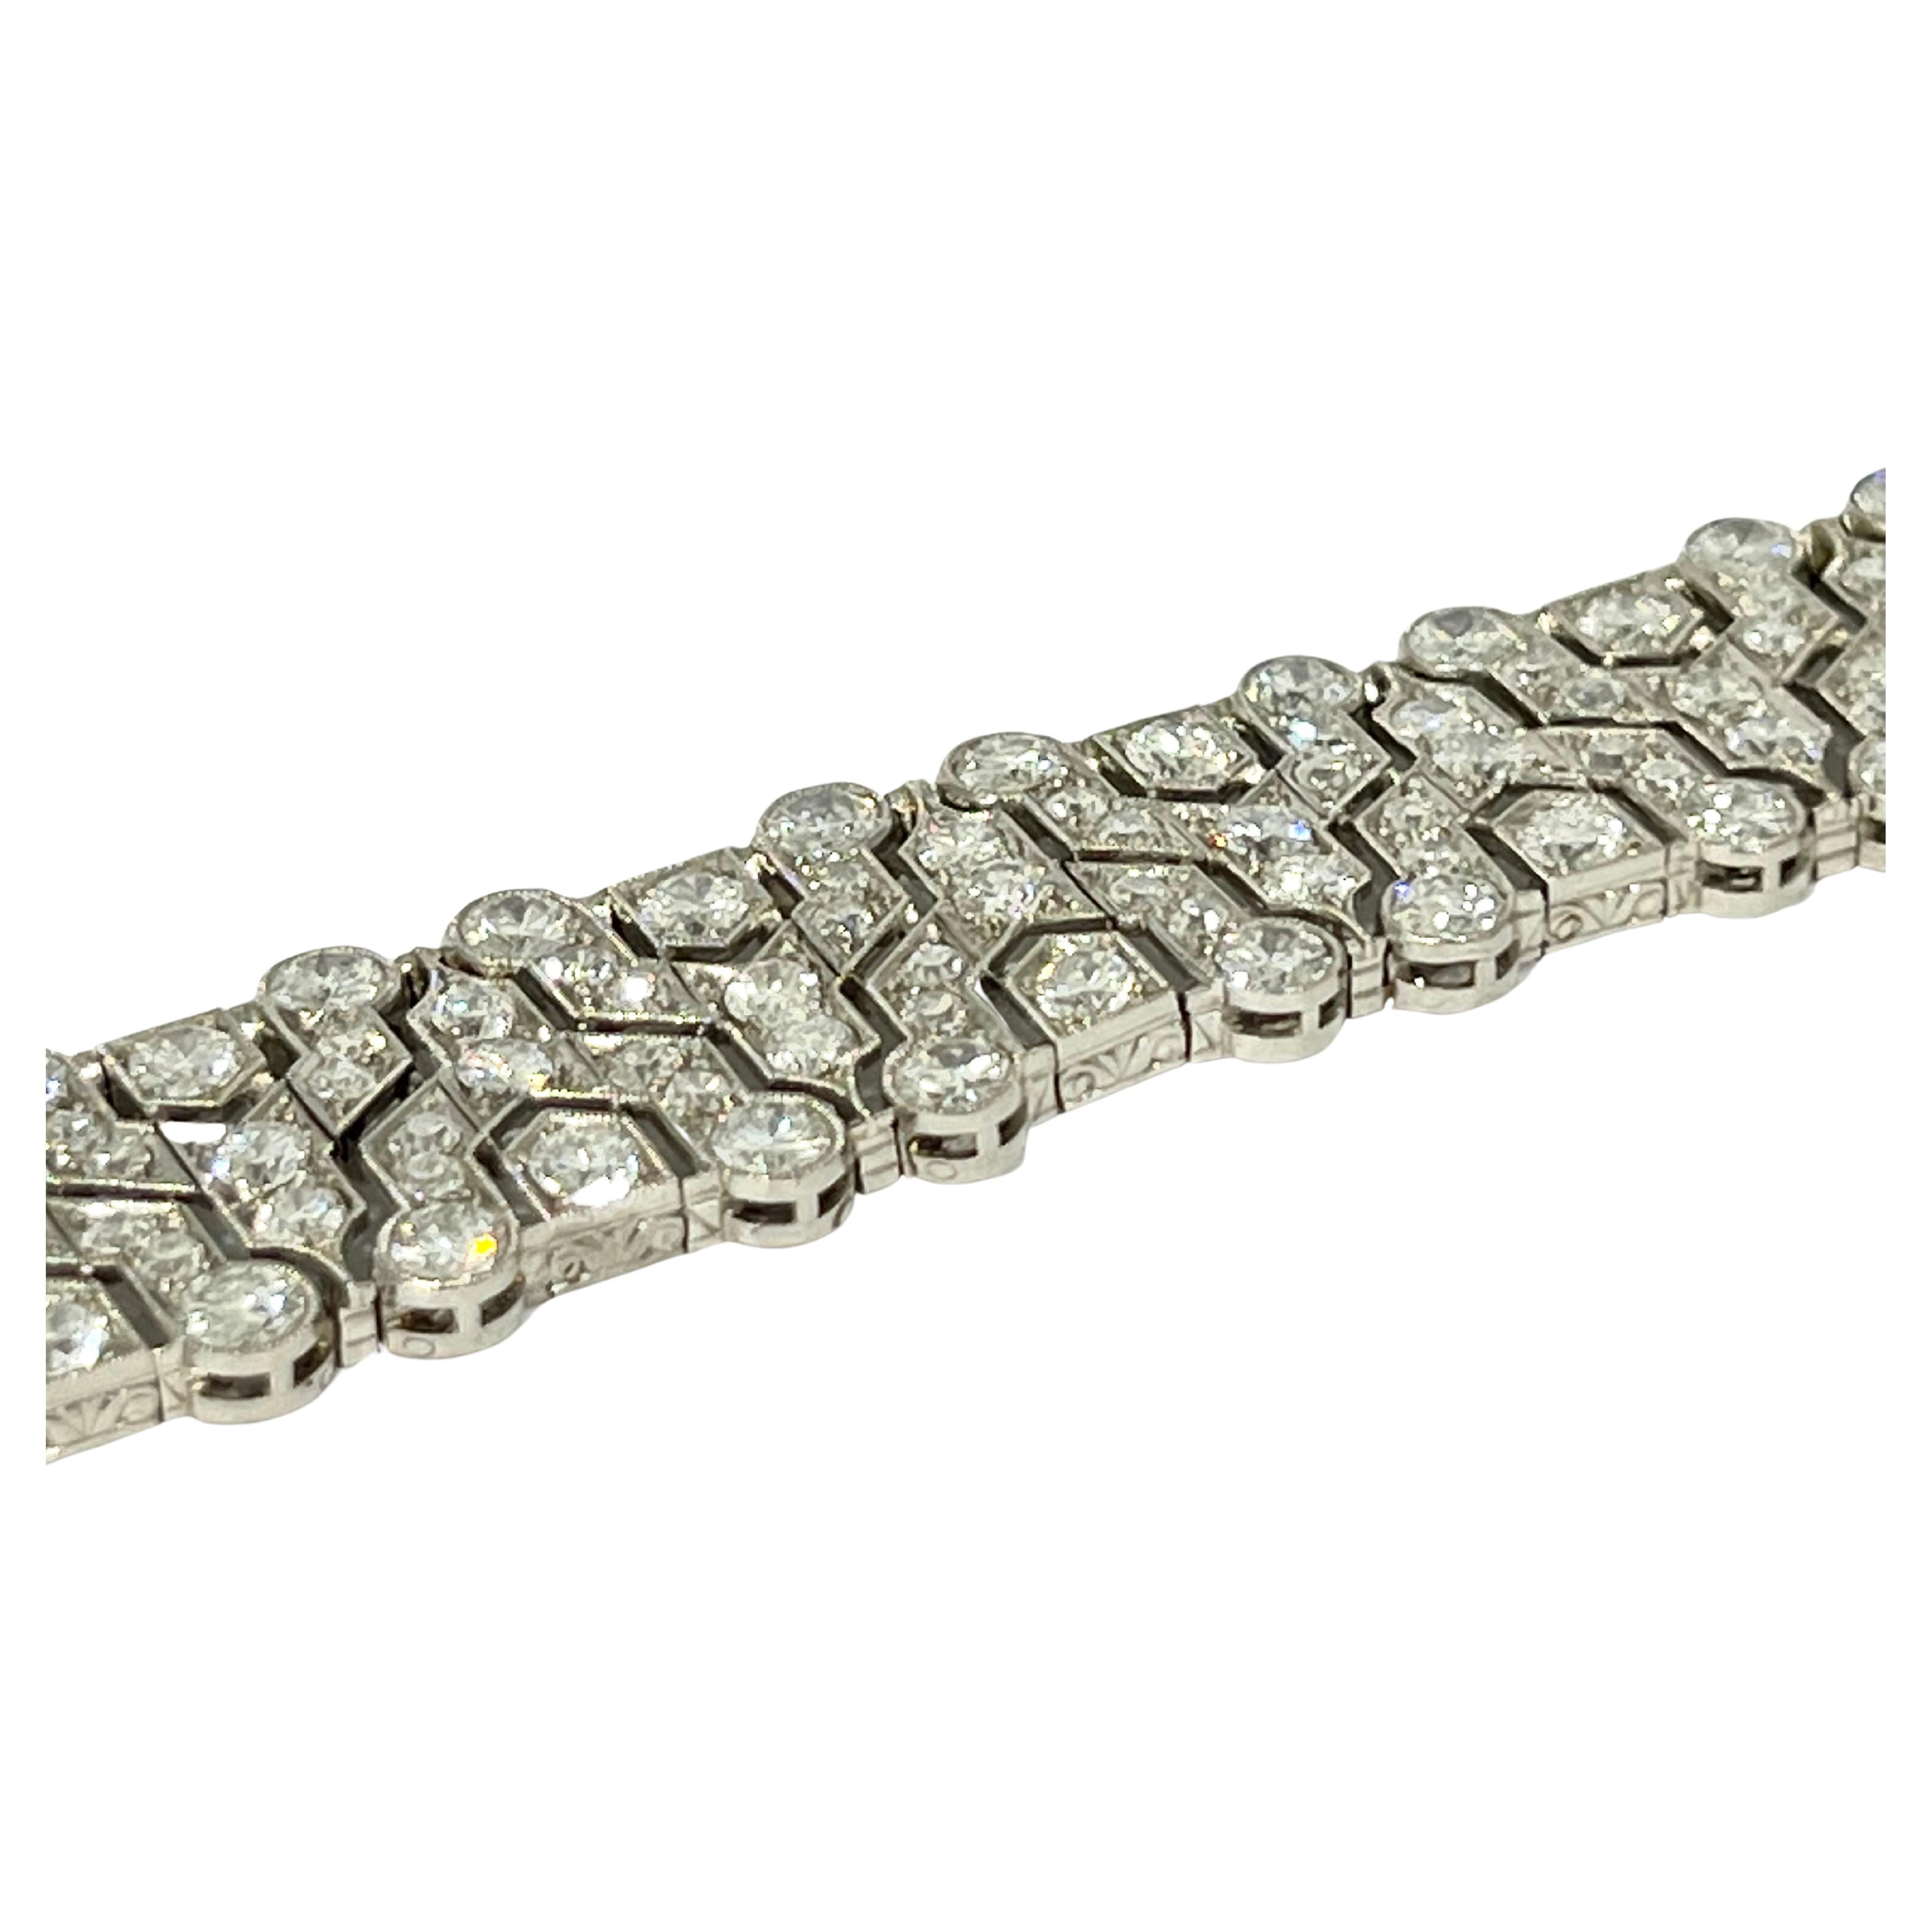 Art Deco 1910-1920 Platin- und Diamantarmband 

◘ Länge 17cm  /6,69 Zoll und Breite 0,59 cm 
◘ Diamanten 15ct aus Diamanten 
◘ Gewicht 16,4gr


PRADERA ist ein in zweiter Generation familiengeführtes Juwelierunternehmen in Spanien, mit einer reichen